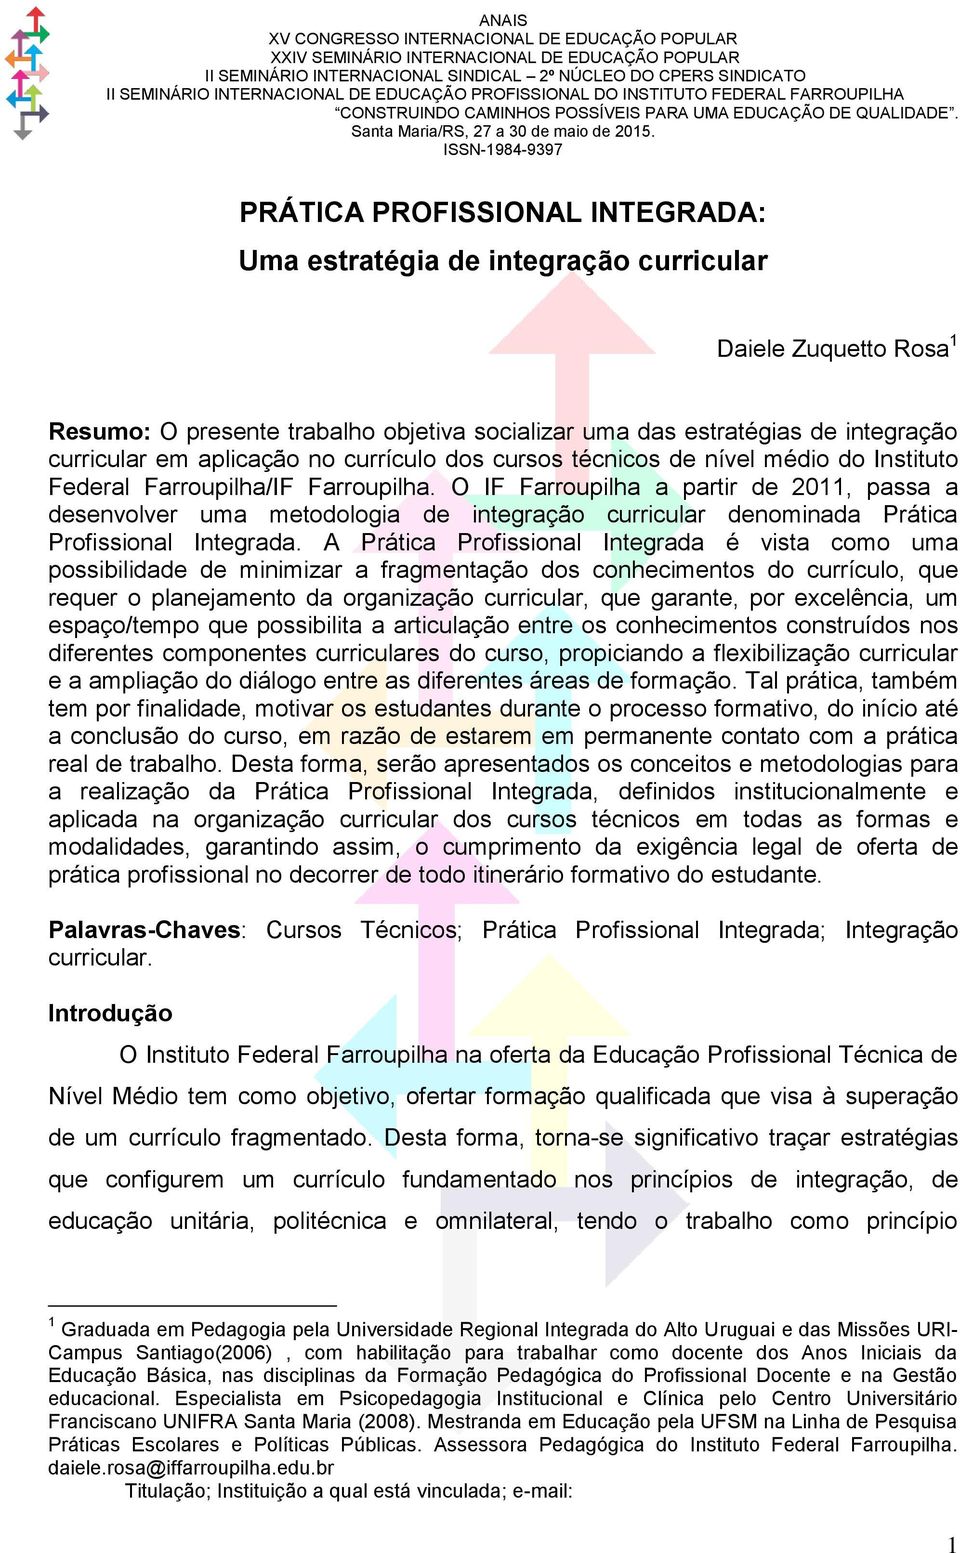 O IF Farroupilha a partir de 2011, passa a desenvolver uma metodologia de integração curricular denominada Prática Profissional Integrada.